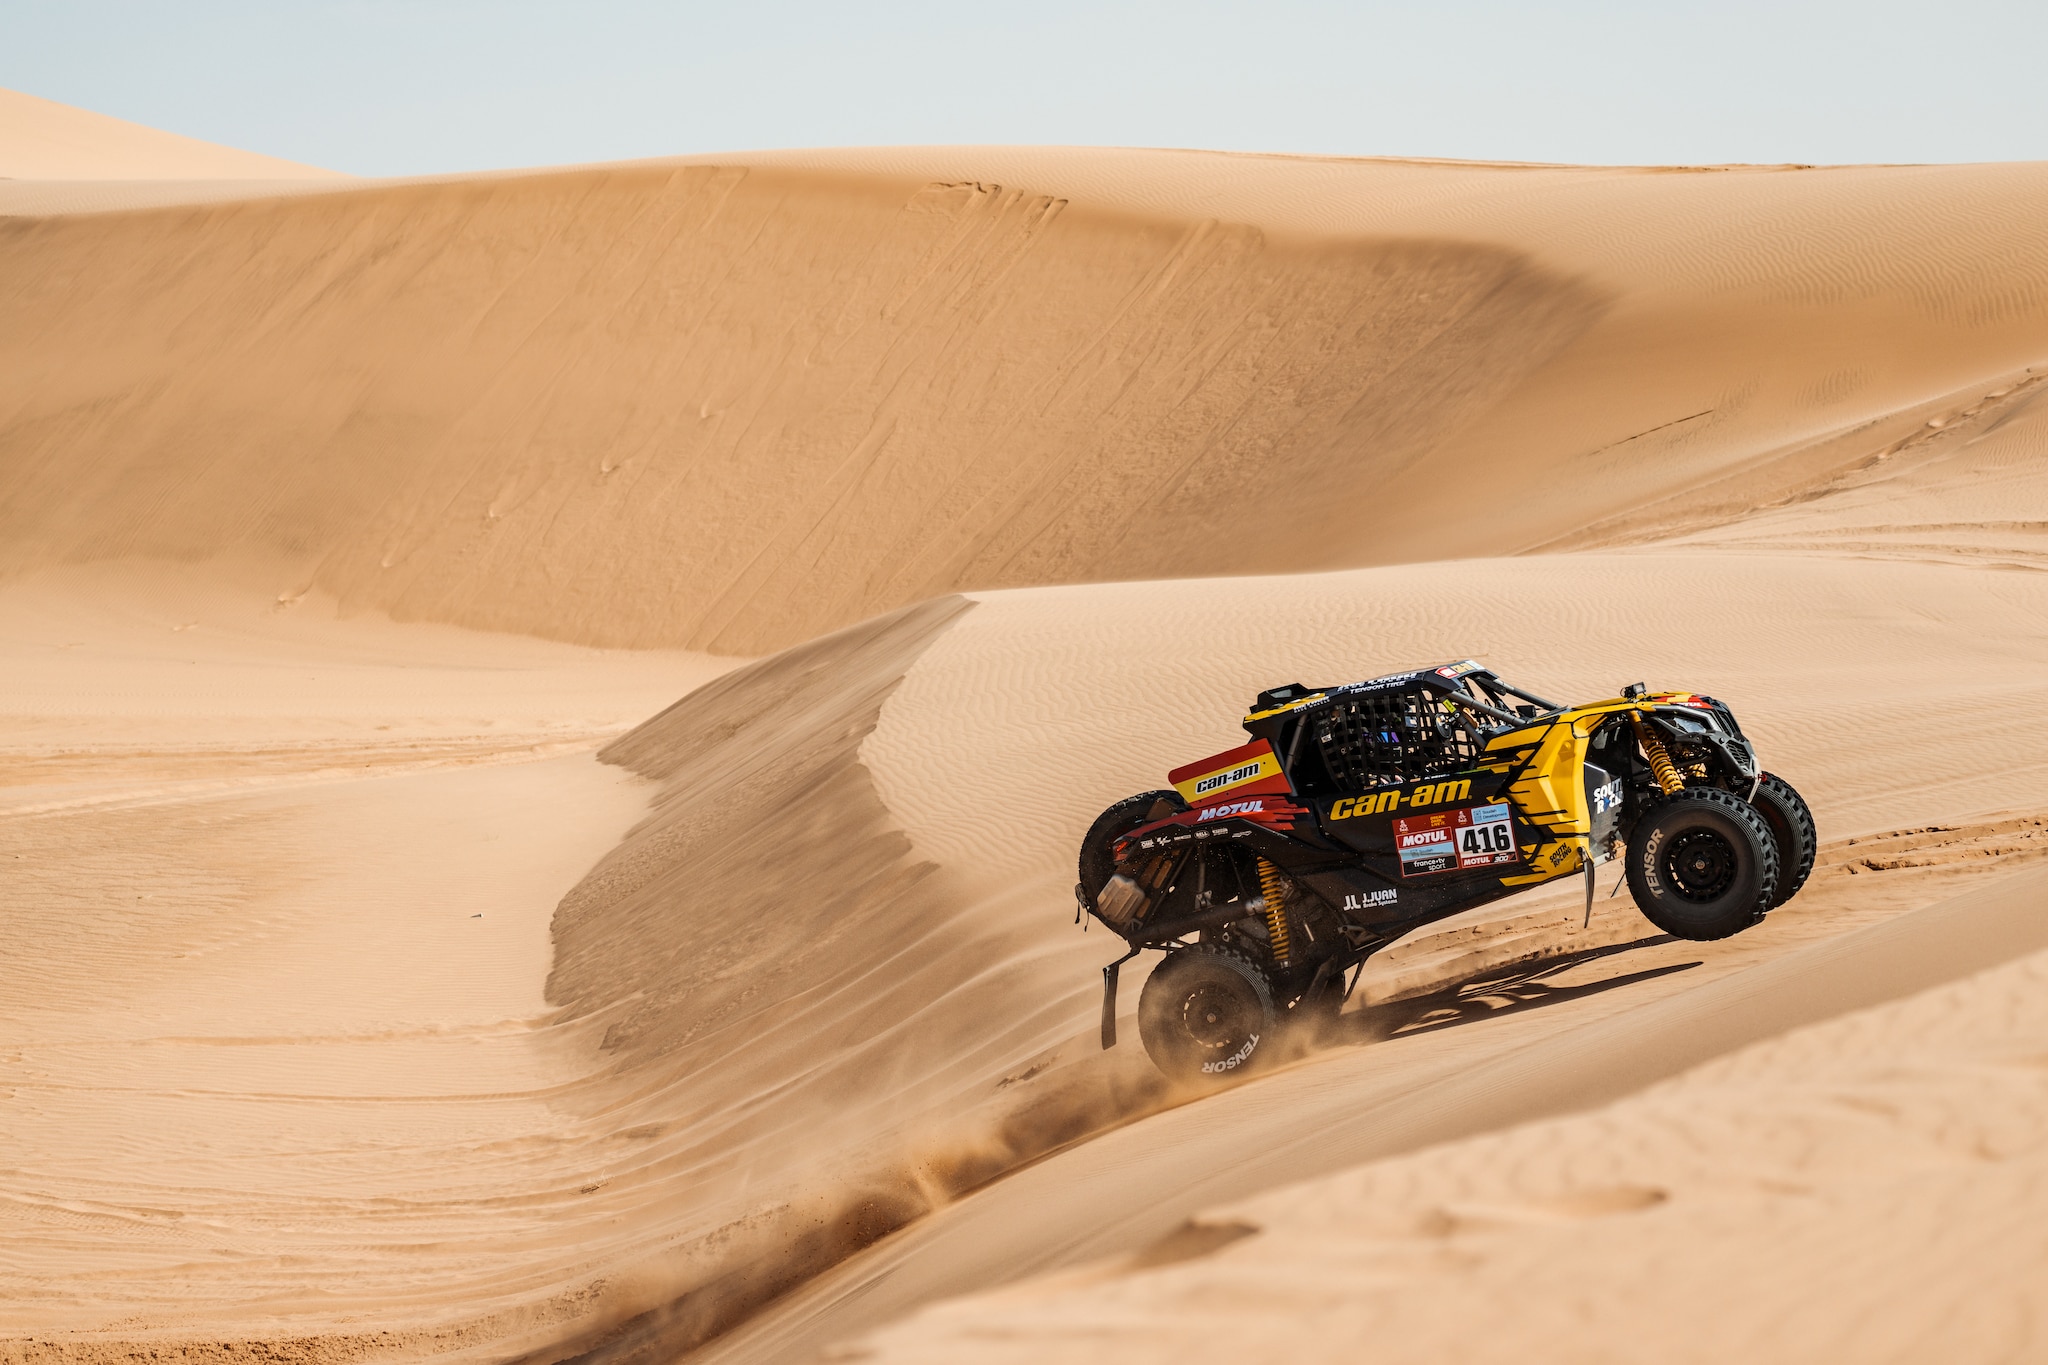 Maverick roulant sur une dune de sable dans le désert